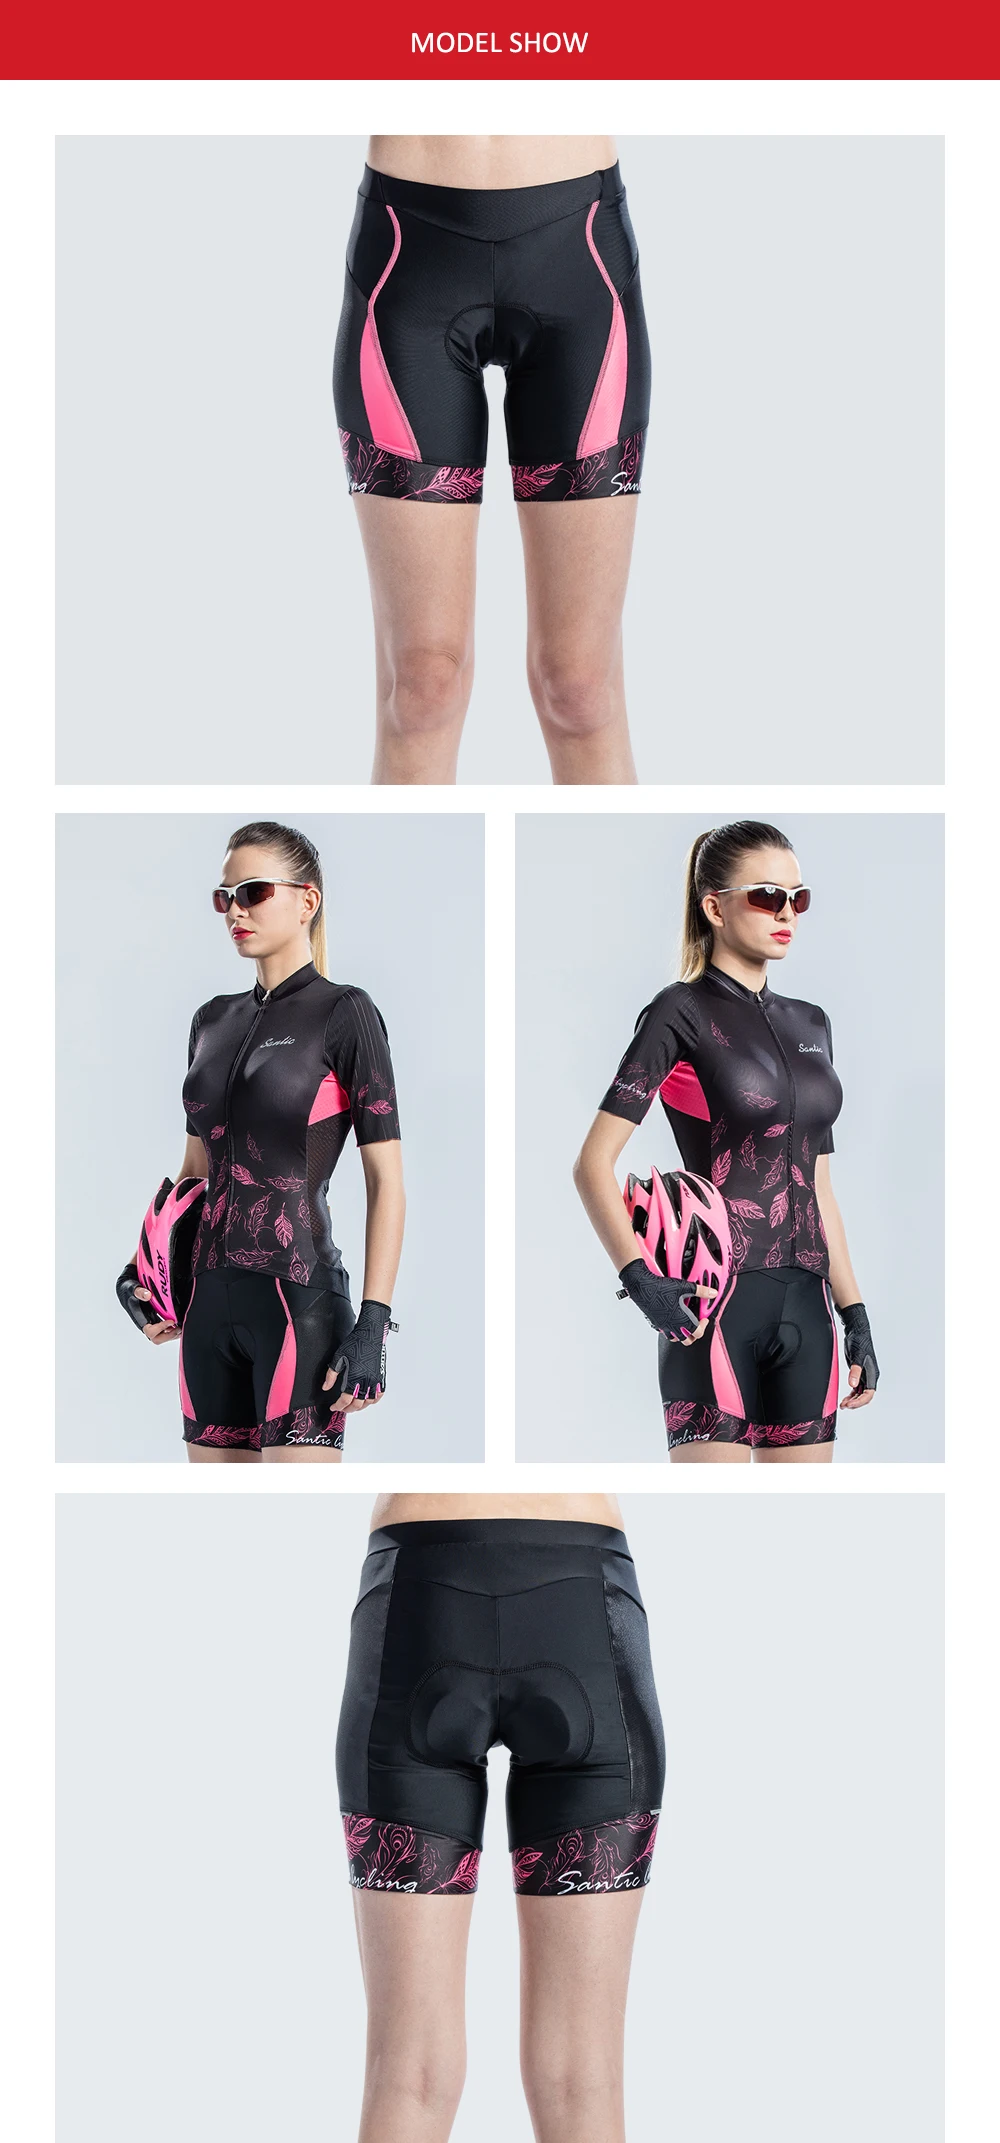 Santic женские велосипедные шорты с 1/4 подкладкой Coolmax 4D Pad противоударные импортные CARVICO тканевые противоударные Короткие штаны для верховой езды